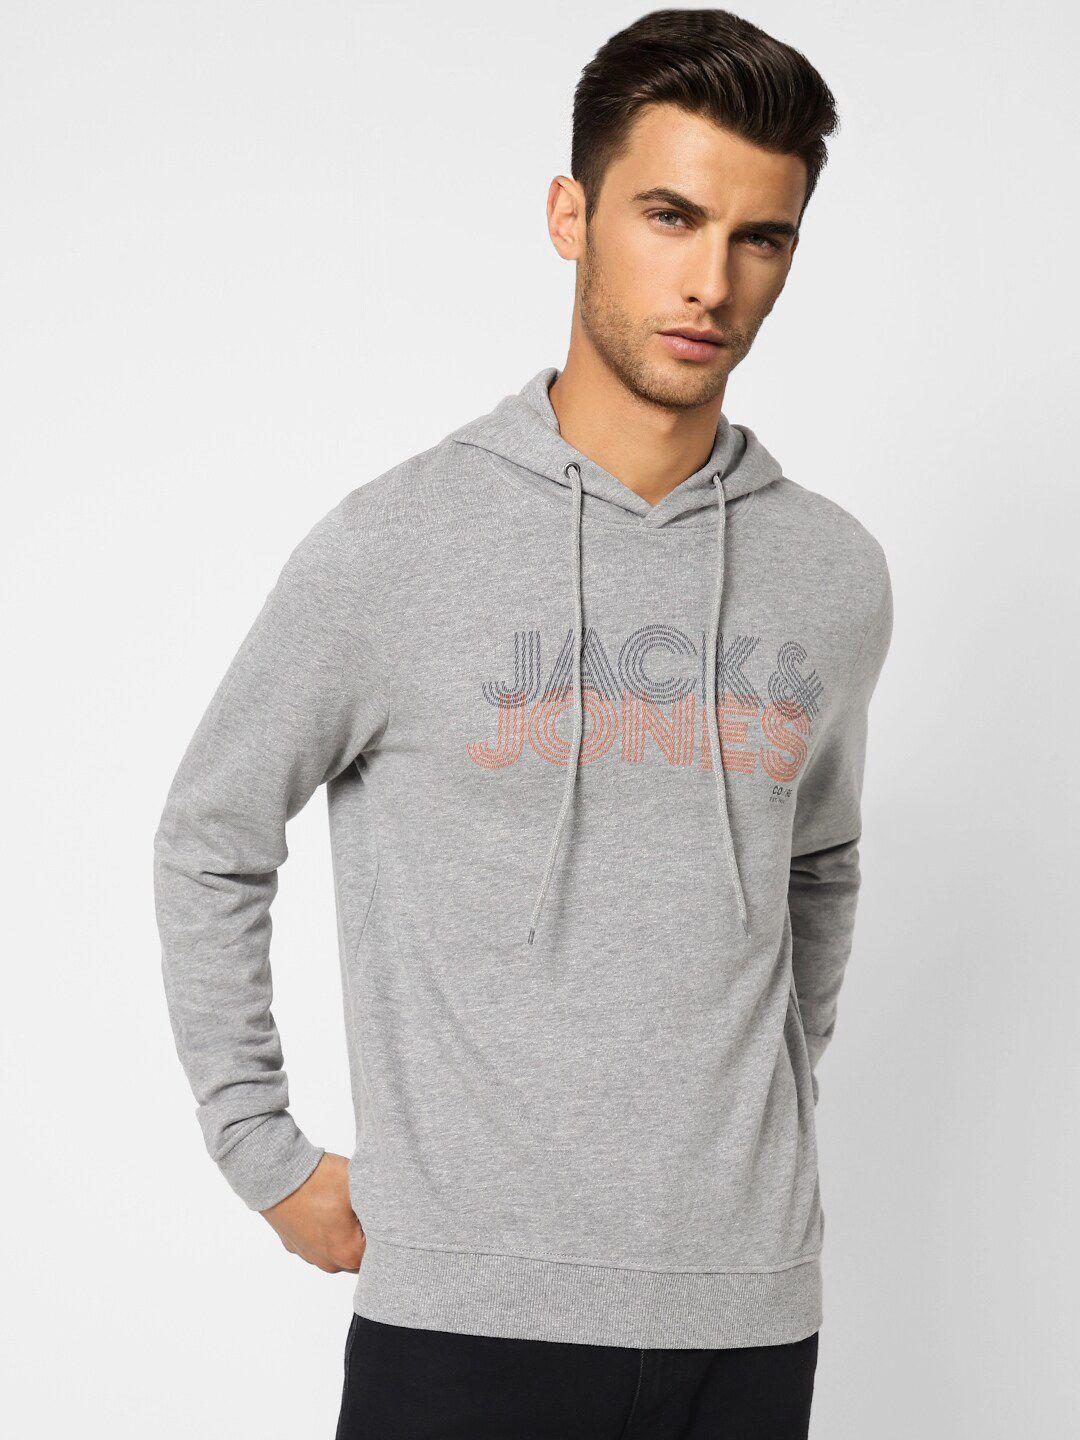 jack-&-jones-men-grey-printed-hooded-sweatshirt